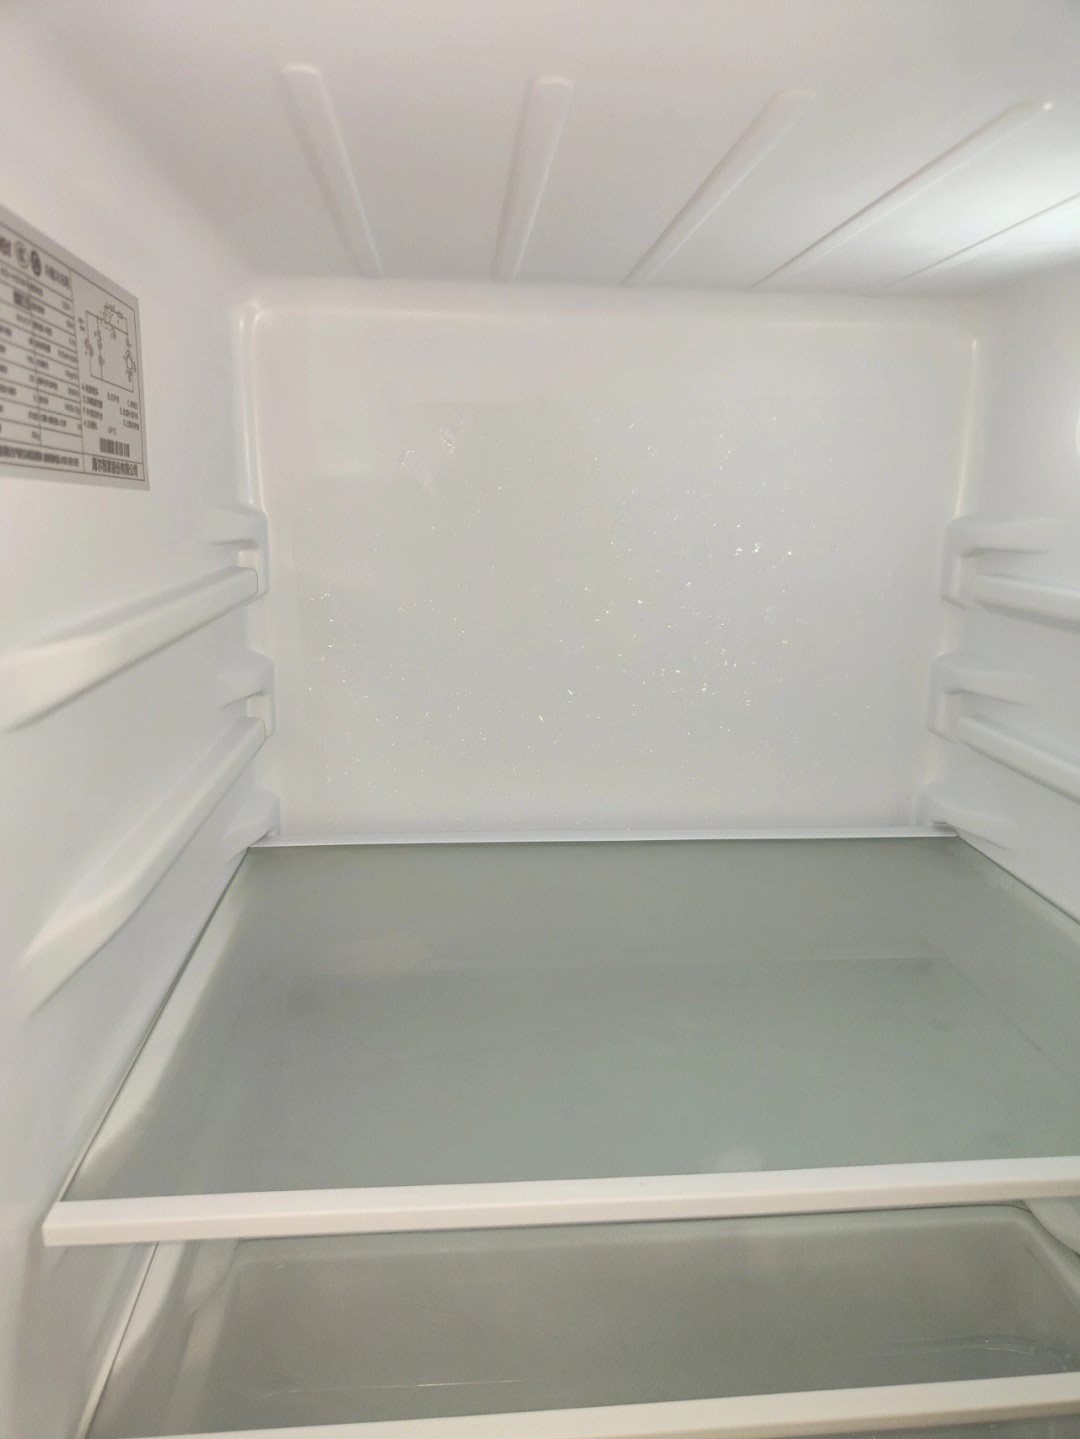 冰箱保鲜层在哪里图解图片